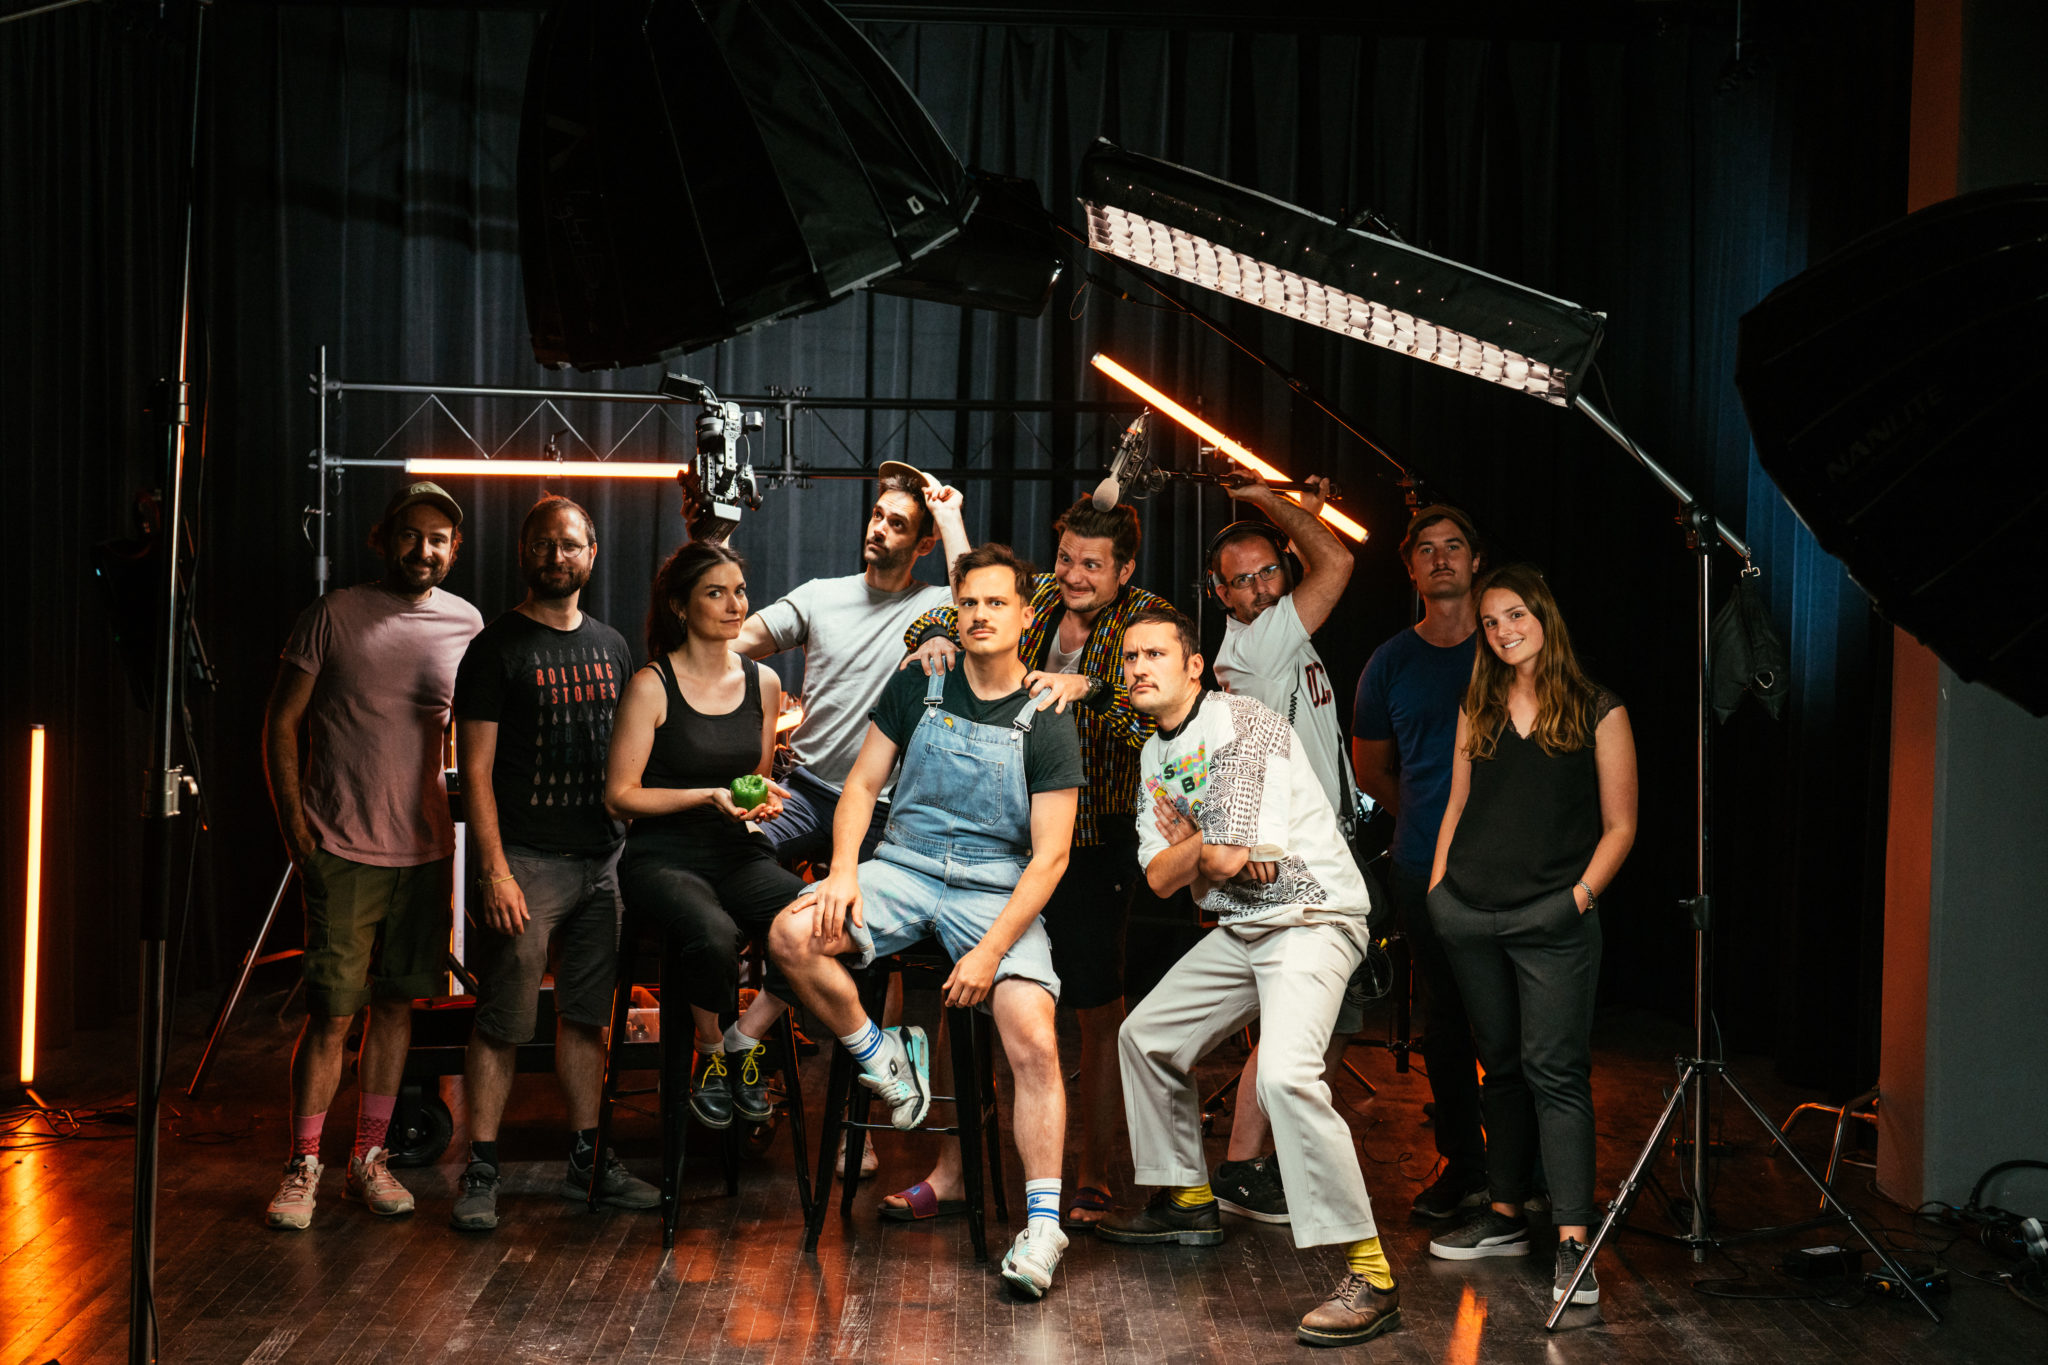 équipe vidéo production les indépendants à strasbourg dans les studios du Rhin pendant le tournage de Money Shot de la chaine YouTube slexno